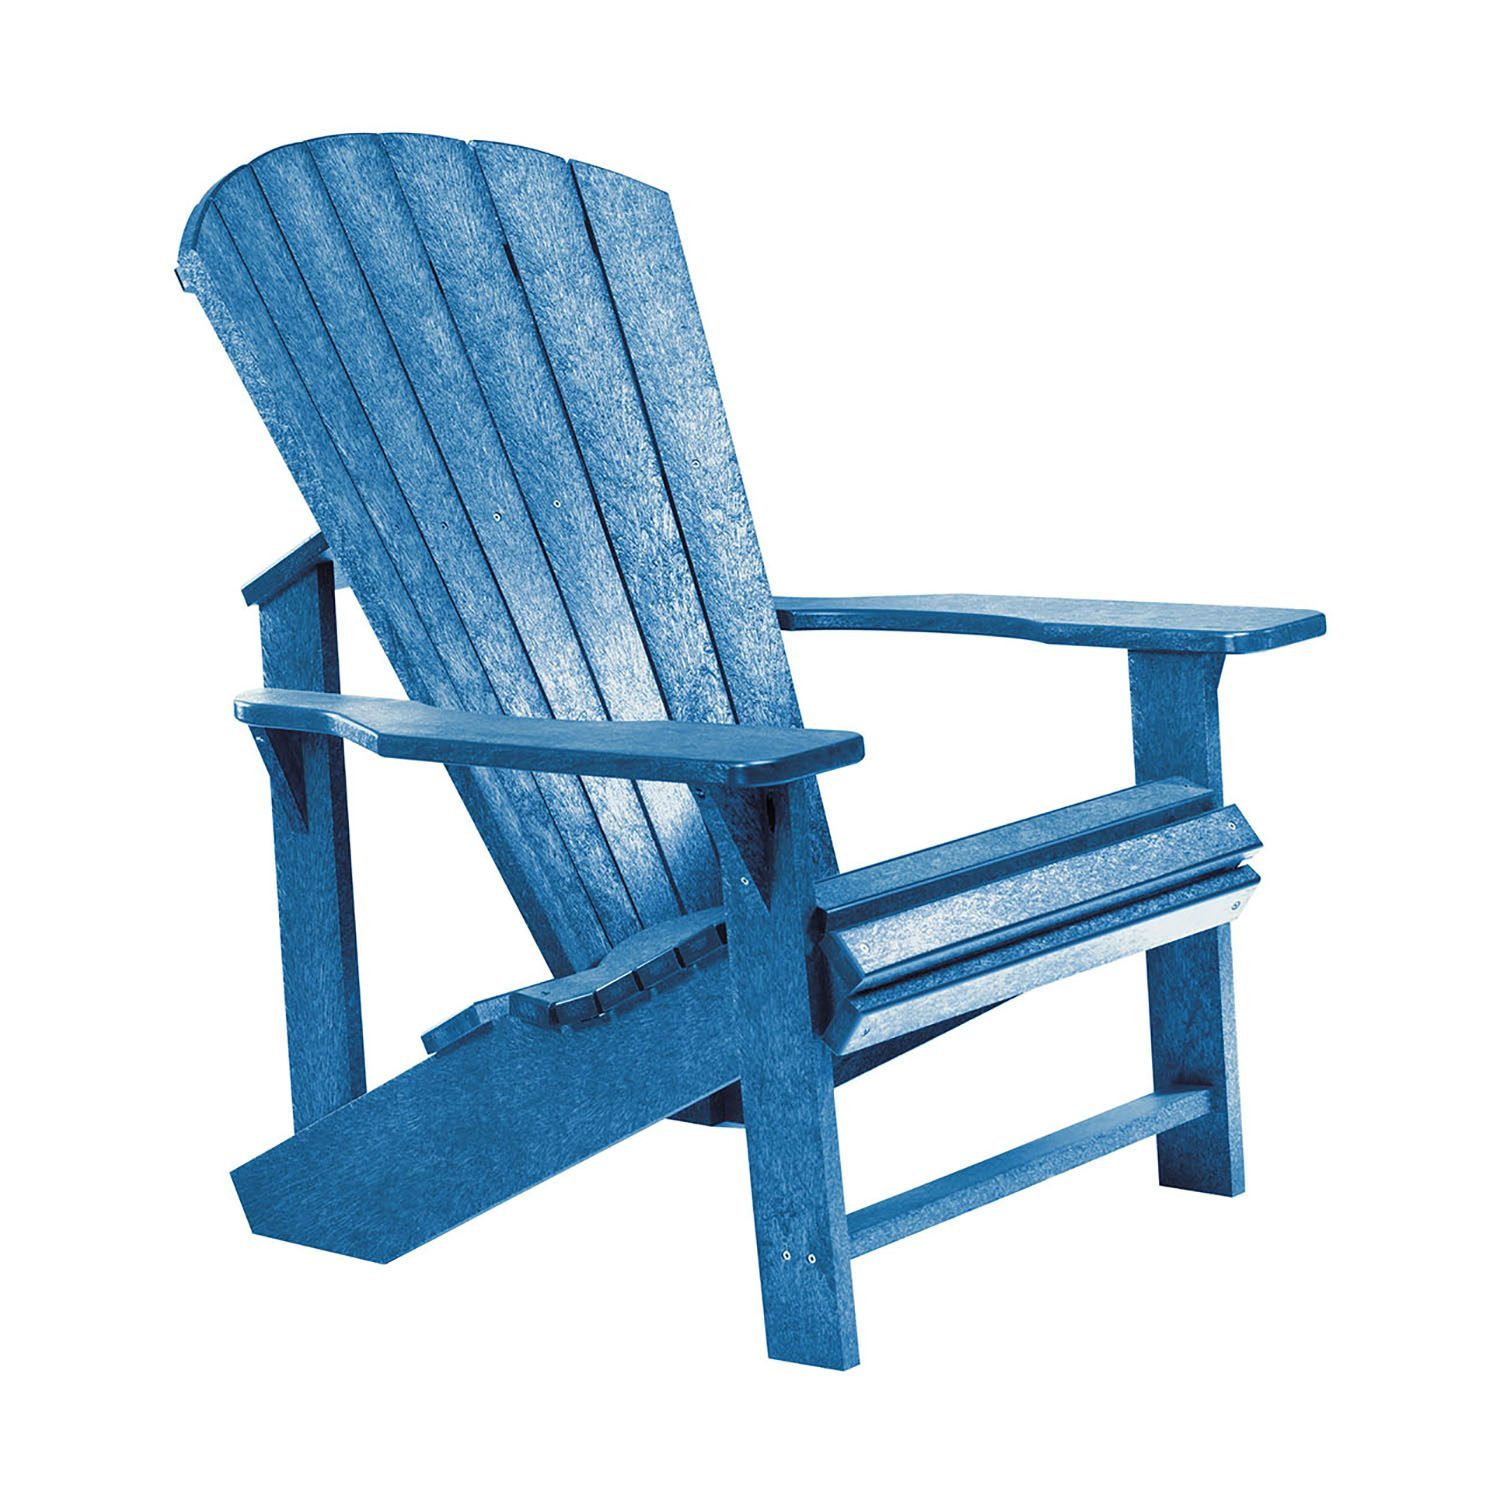 Adirondackstol i återvunnen plast, här i blått.